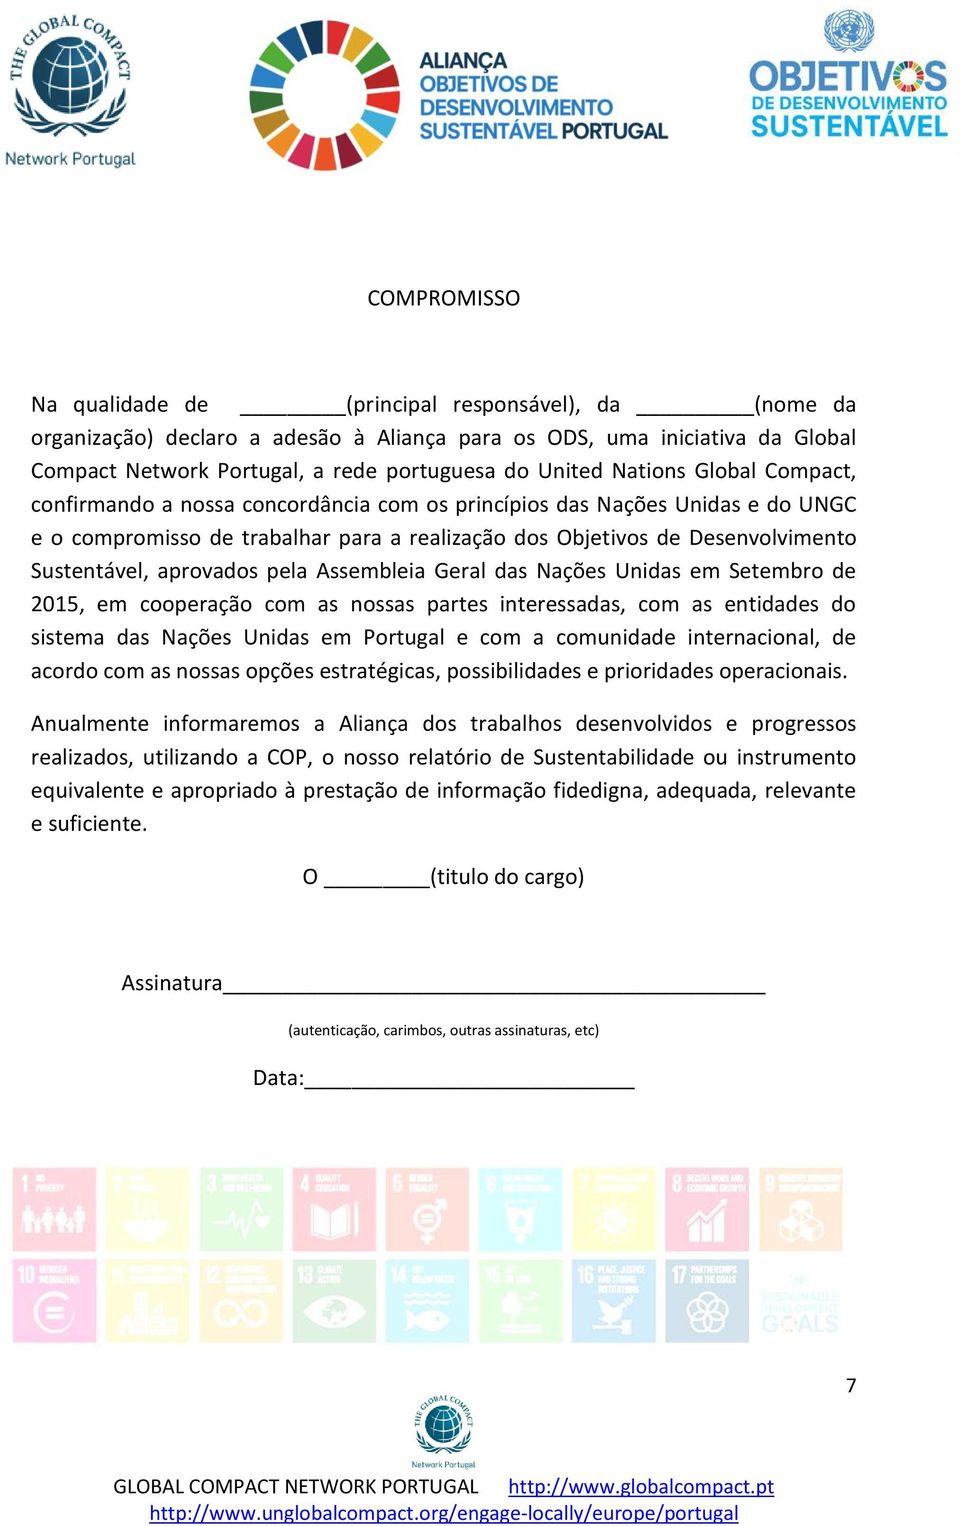 aprovados pela Assembleia Geral das Nações Unidas em Setembro de 2015, em cooperação com as nossas partes interessadas, com as entidades do sistema das Nações Unidas em Portugal e com a comunidade